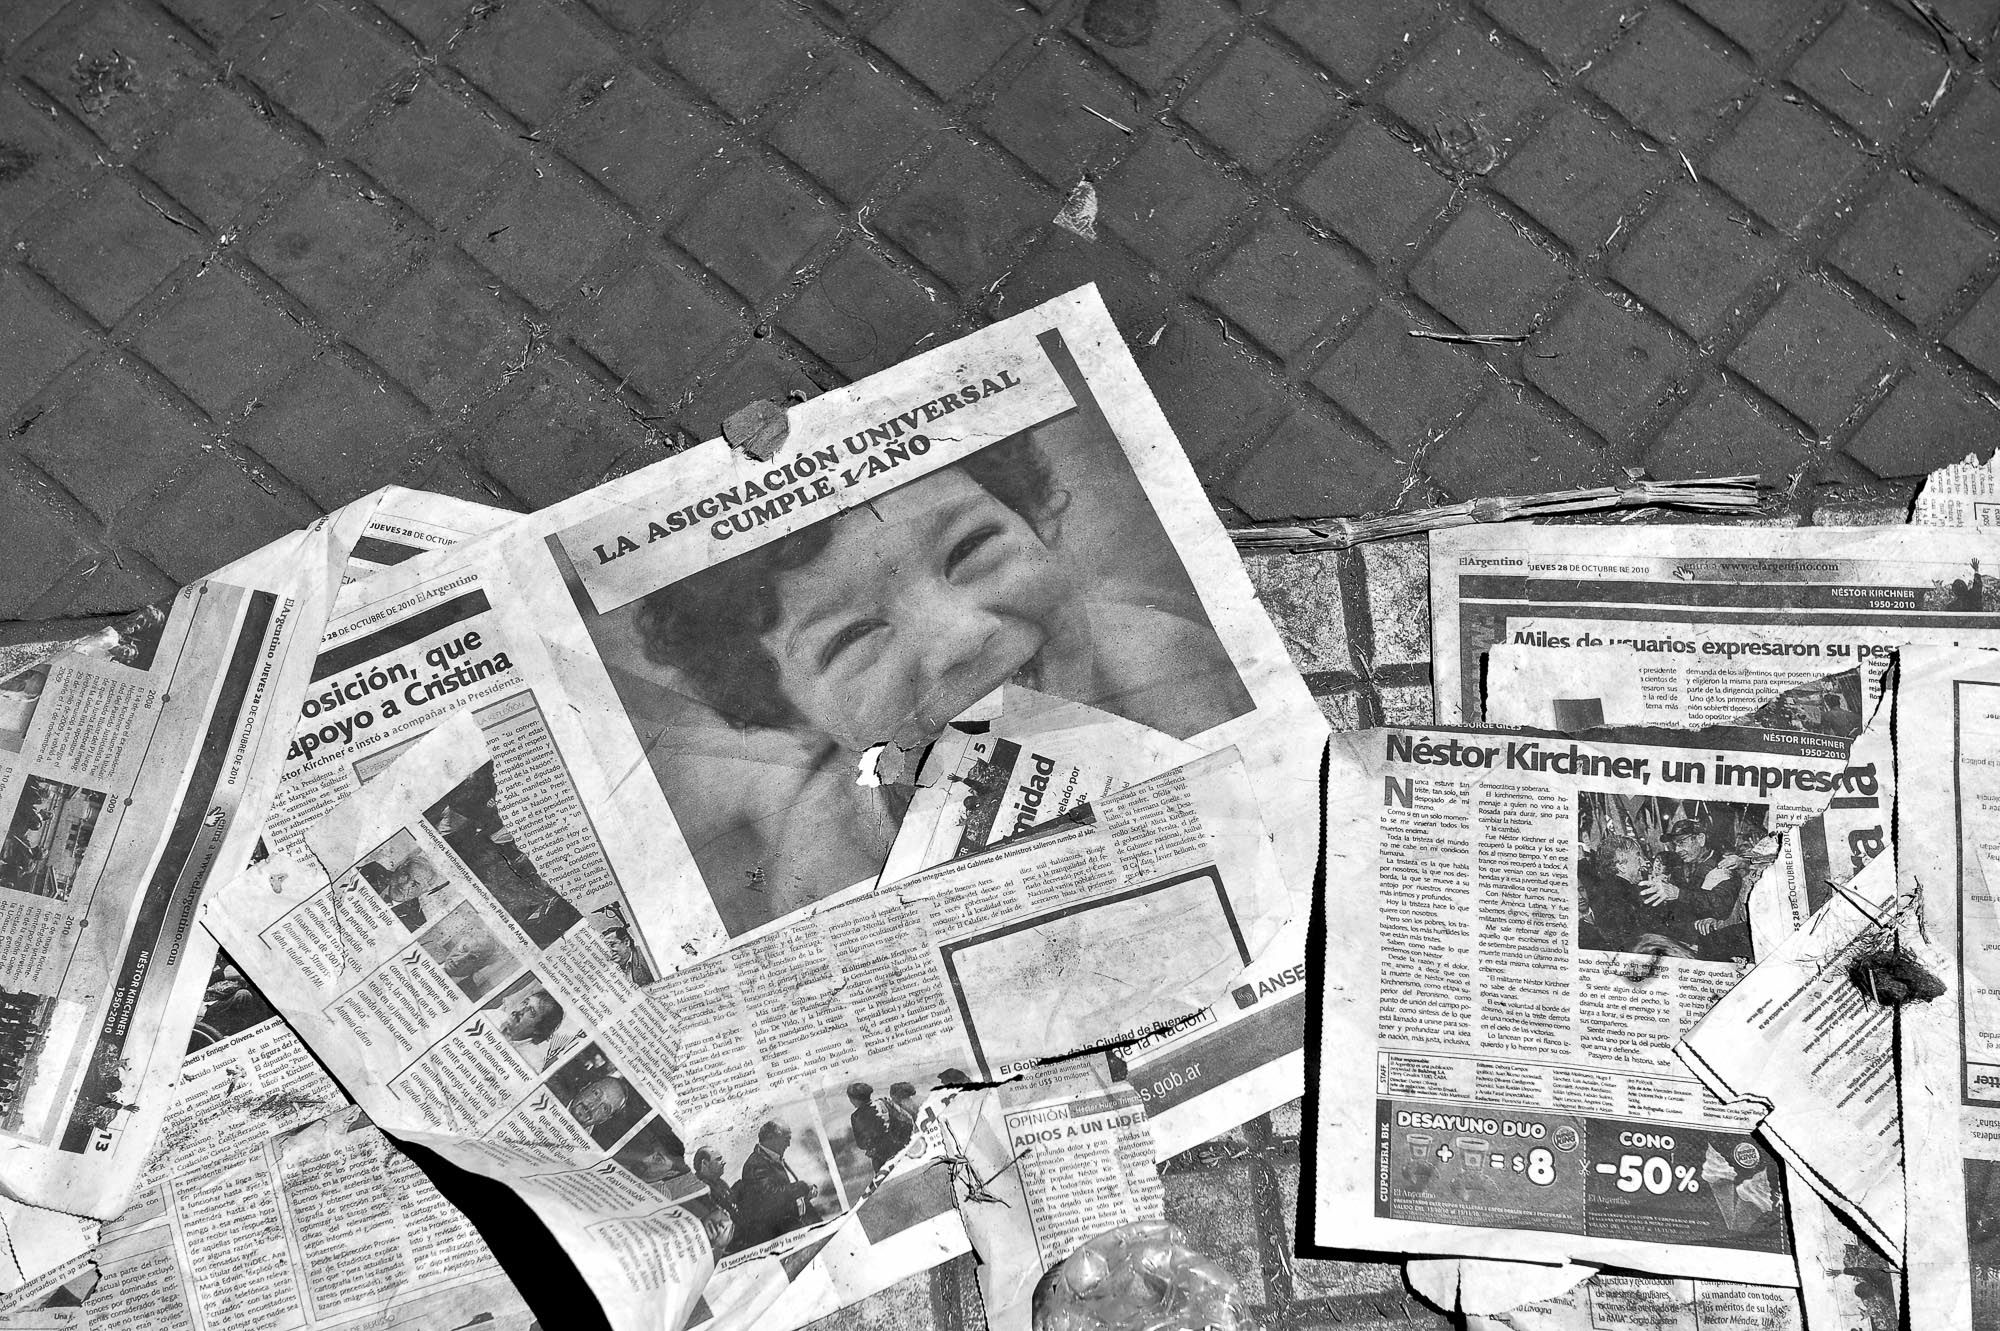 varios recortes de diario tirados en la calle ofrecen noticias sobre nestor kirchner